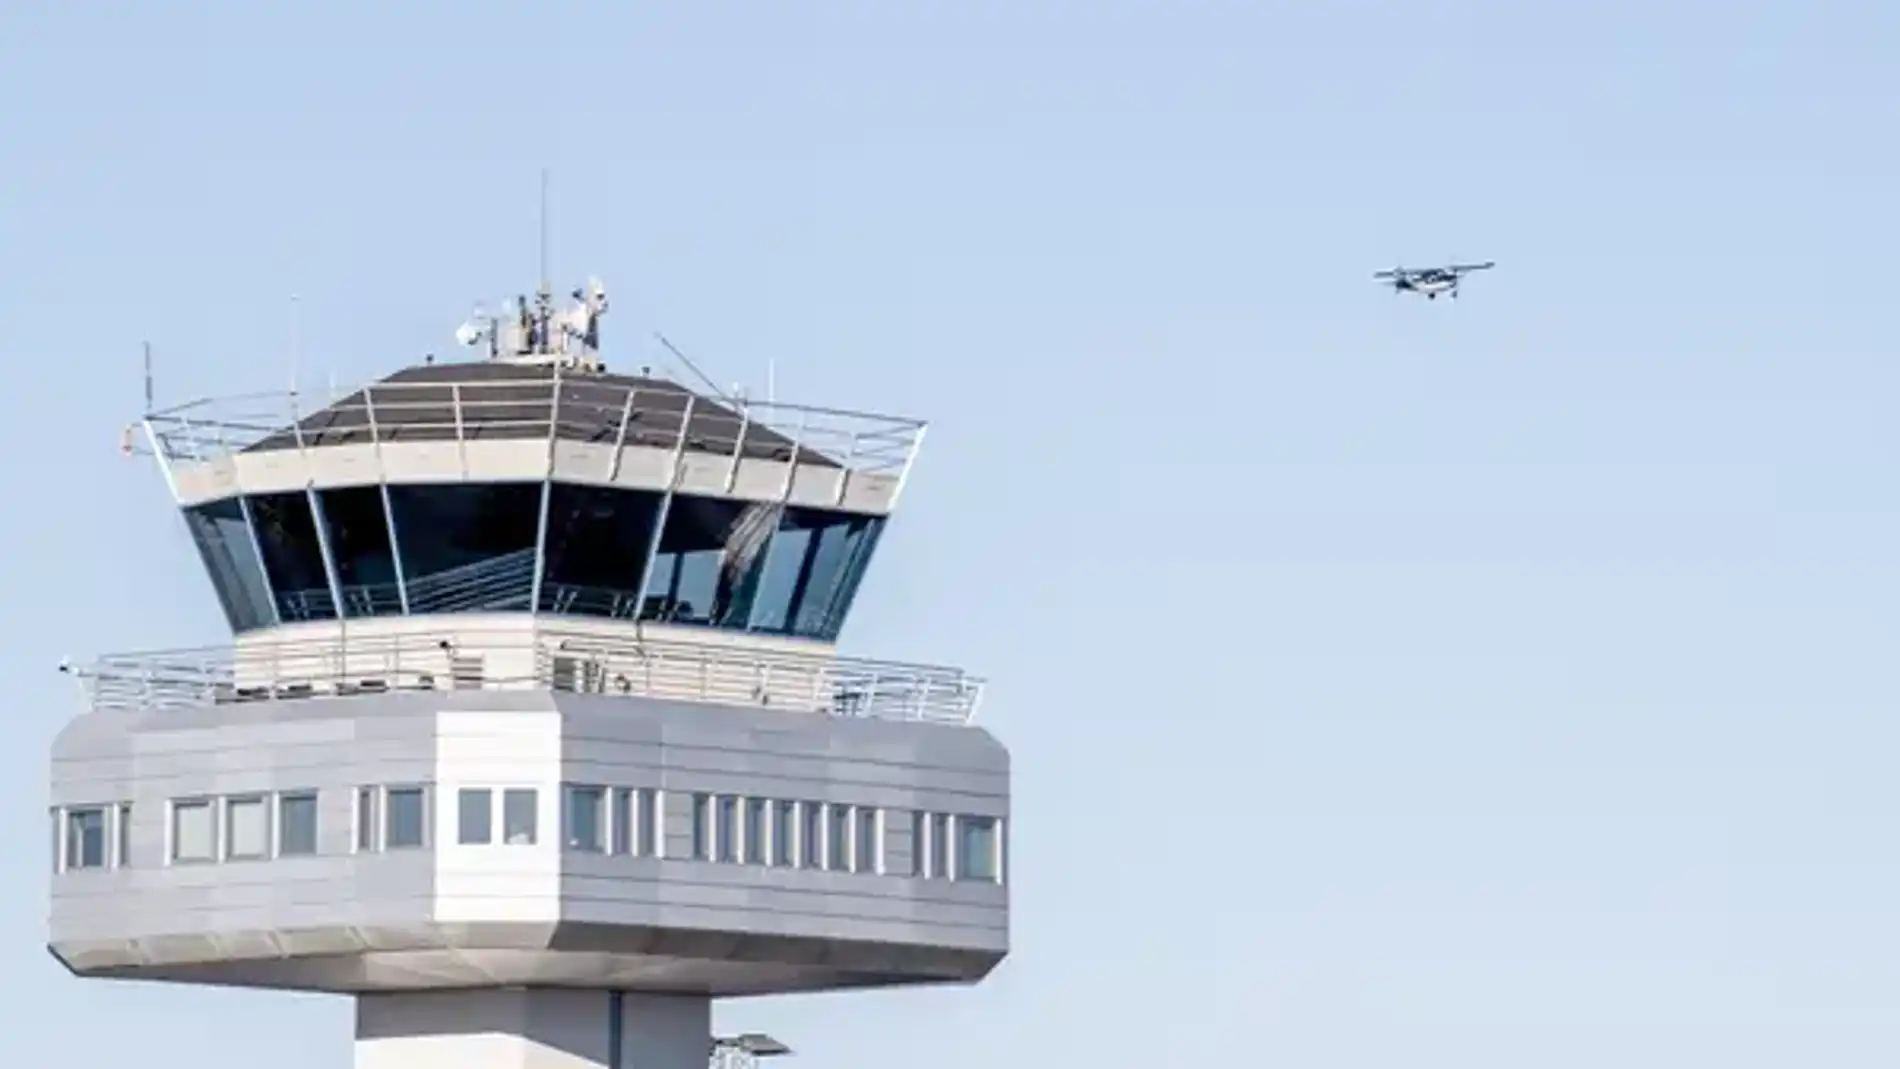 El aeropuerto de Flesland, en la ciudad noruega de Bergen, fue cerrado esta mañana tras detectarse un dron